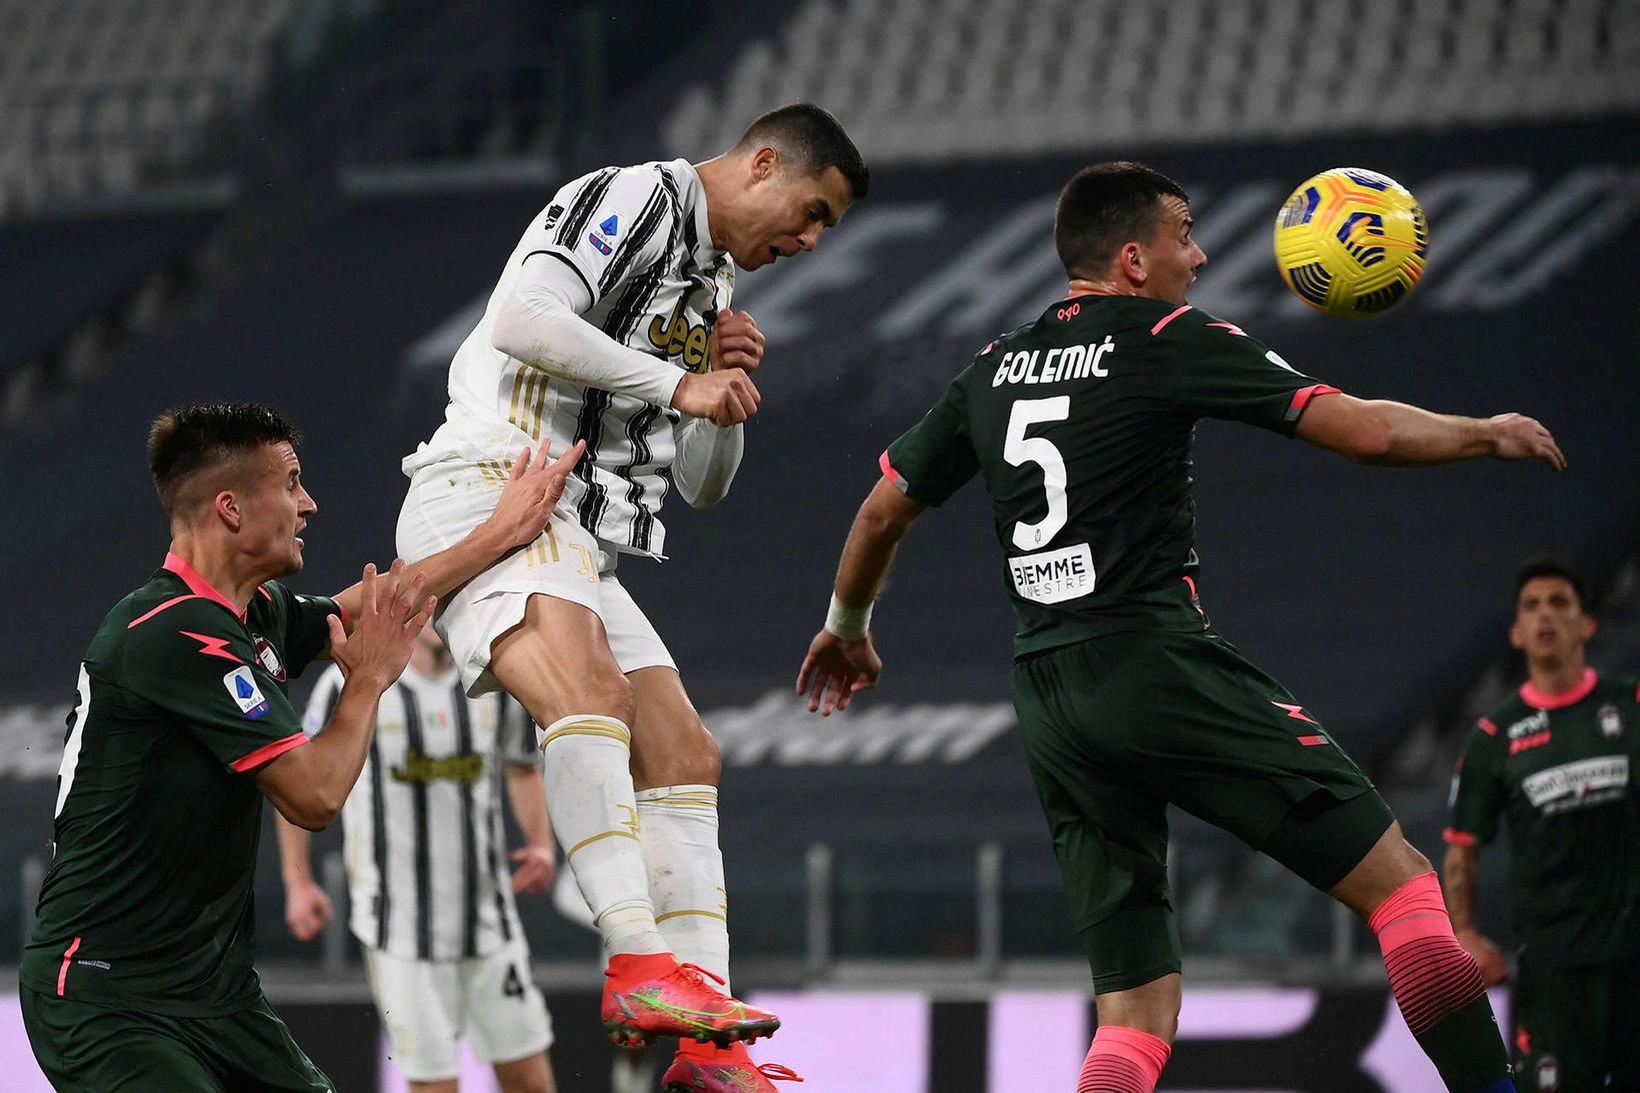 Cristiano Ronaldo skorar seinna mark sitt fyrir Juventus í sigrinum …